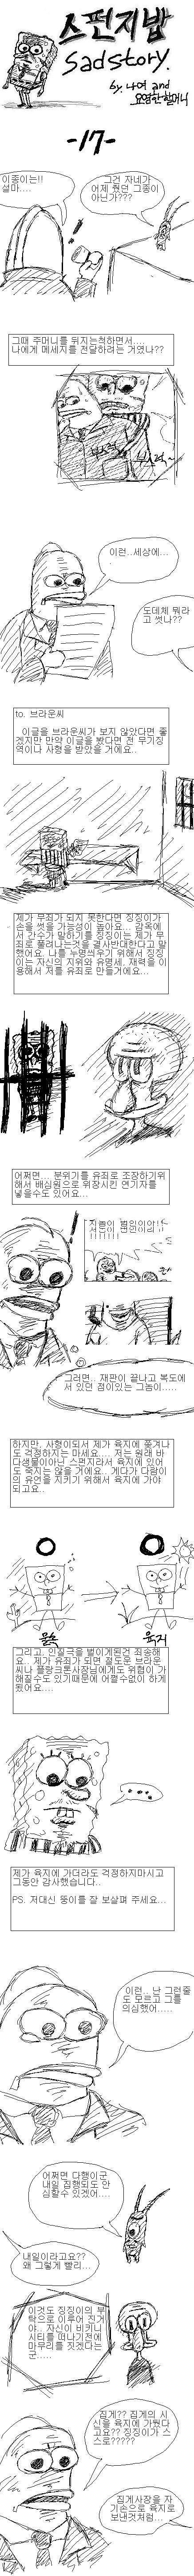 스펀지밥 sad story | 인스티즈